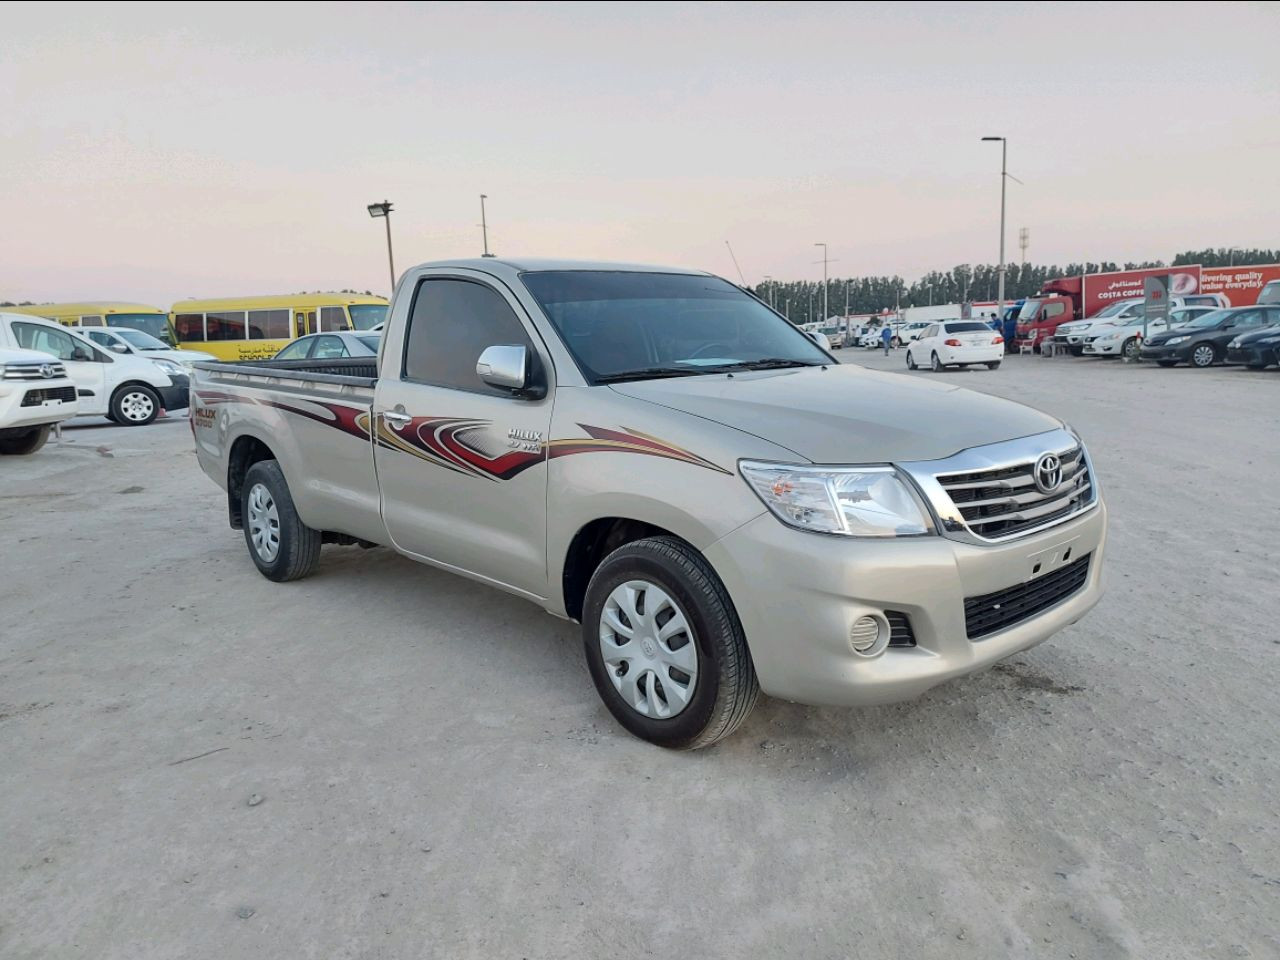 Toyota Hilux 2015 AED 49,000, GCC Spec, Negotiable